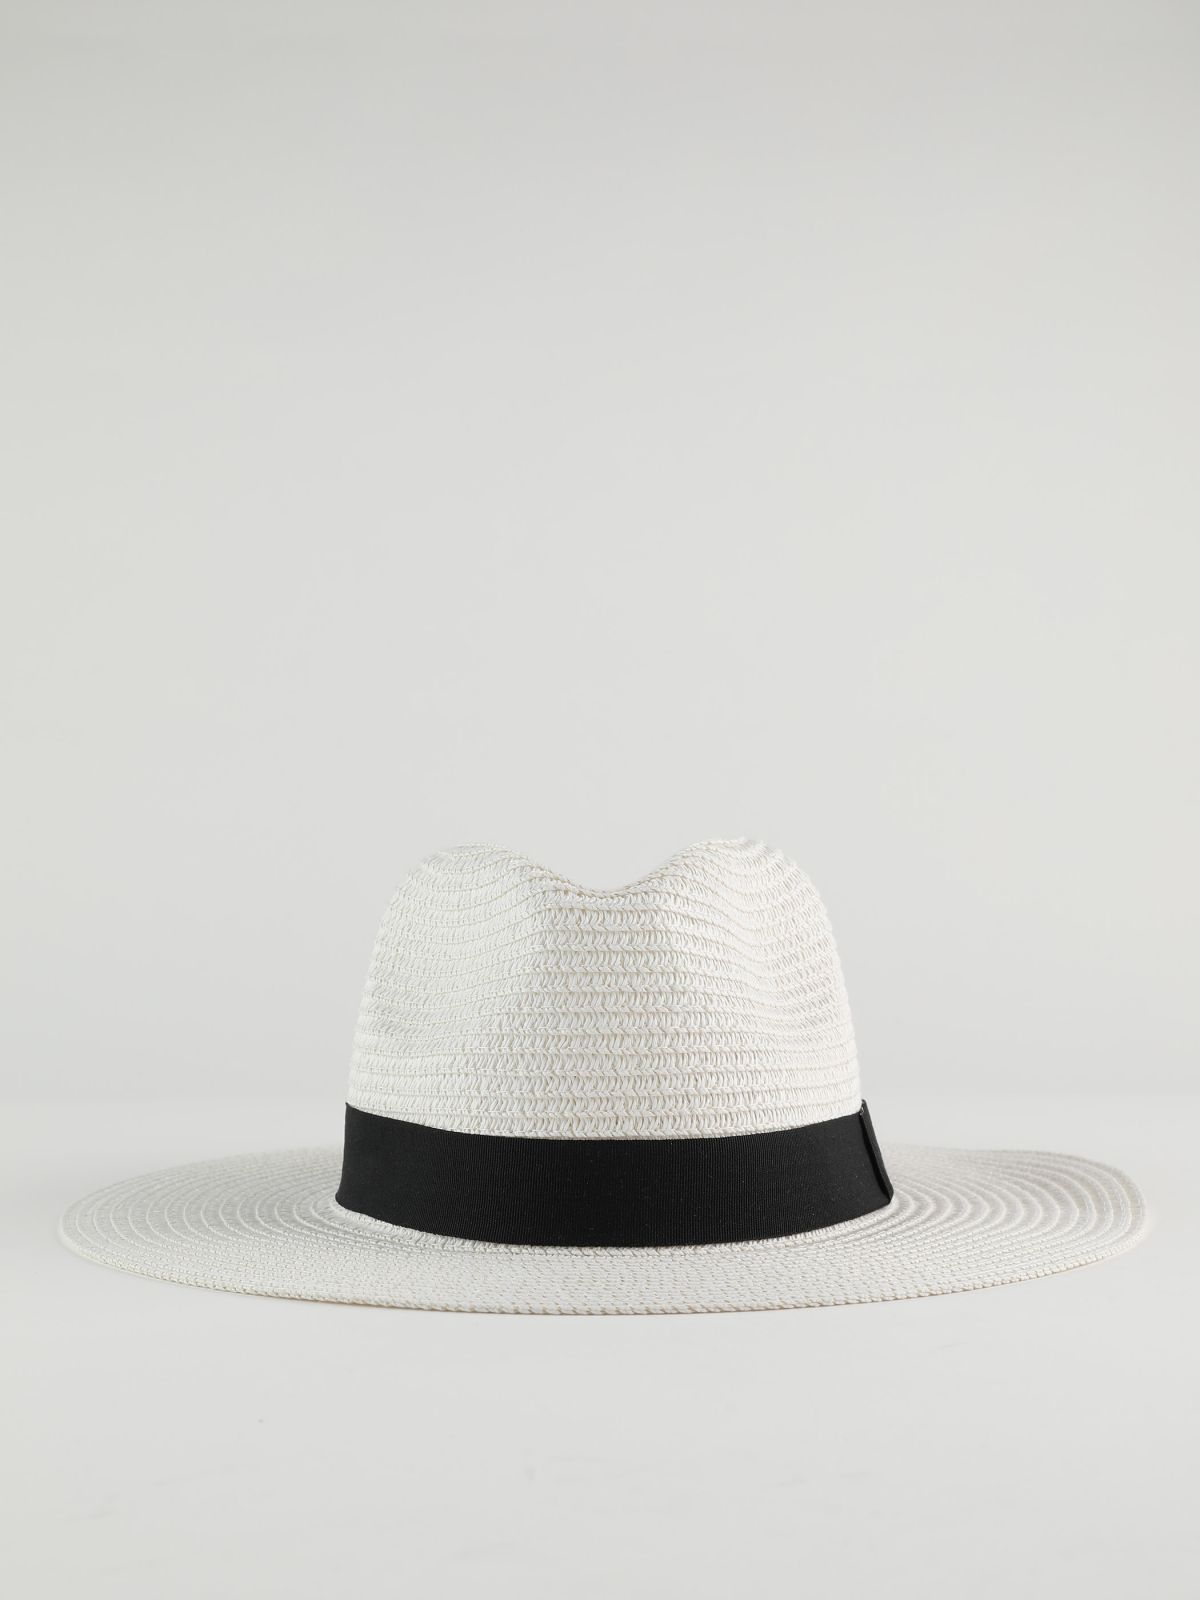  כובע אלמה רחב שוליים / נשים של YANGA